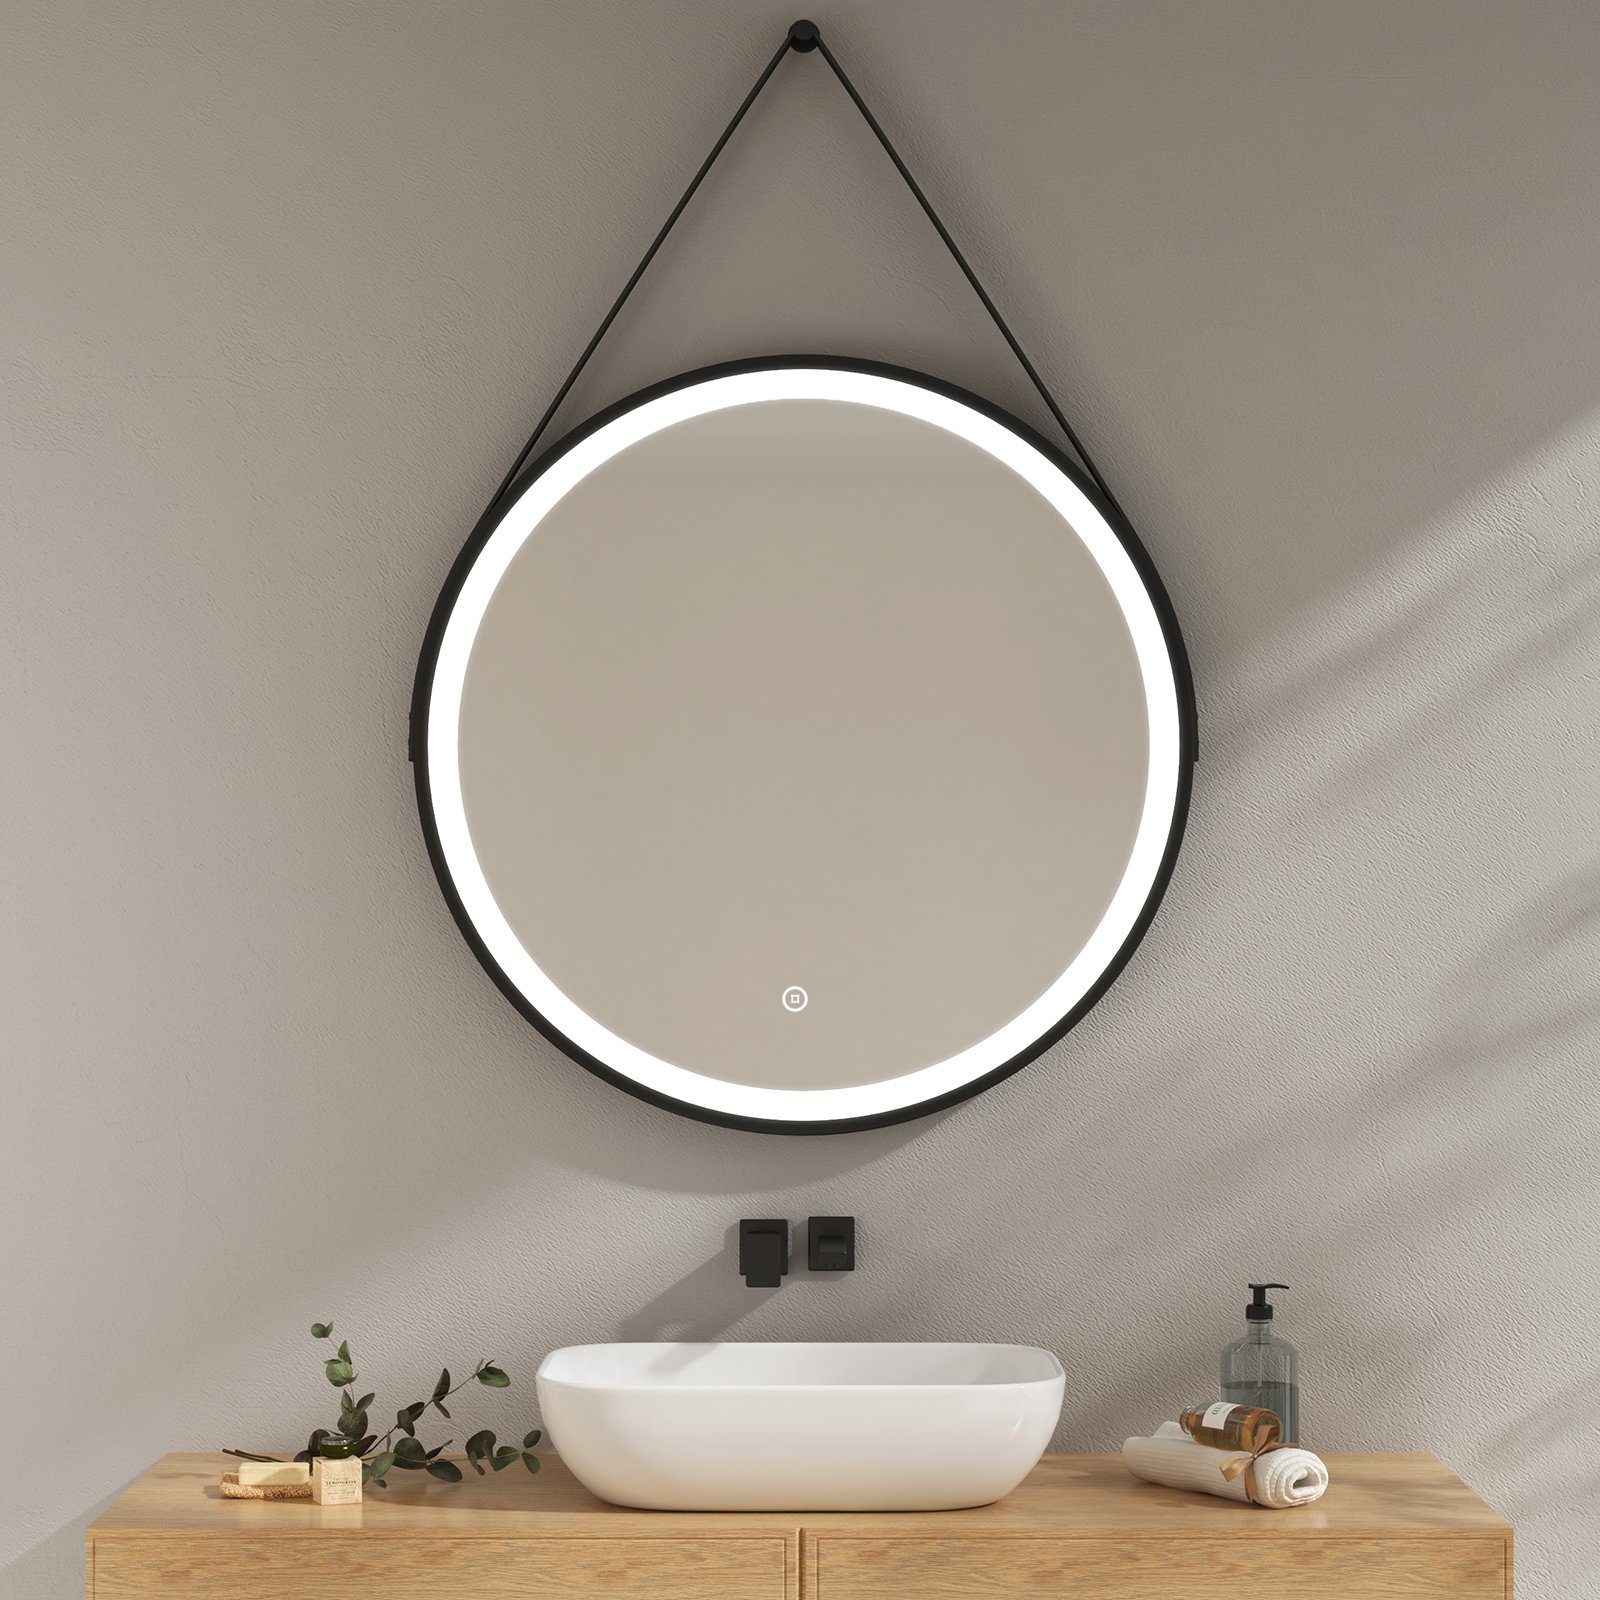 EMKE Badspiegel Badspiegel Rund mit Beleuchtung Badezimmerspiegel mit schwarzem Rahmen, Kaltweißes Licht Intelligenter Touchschalter mit schwarzem Rahmen